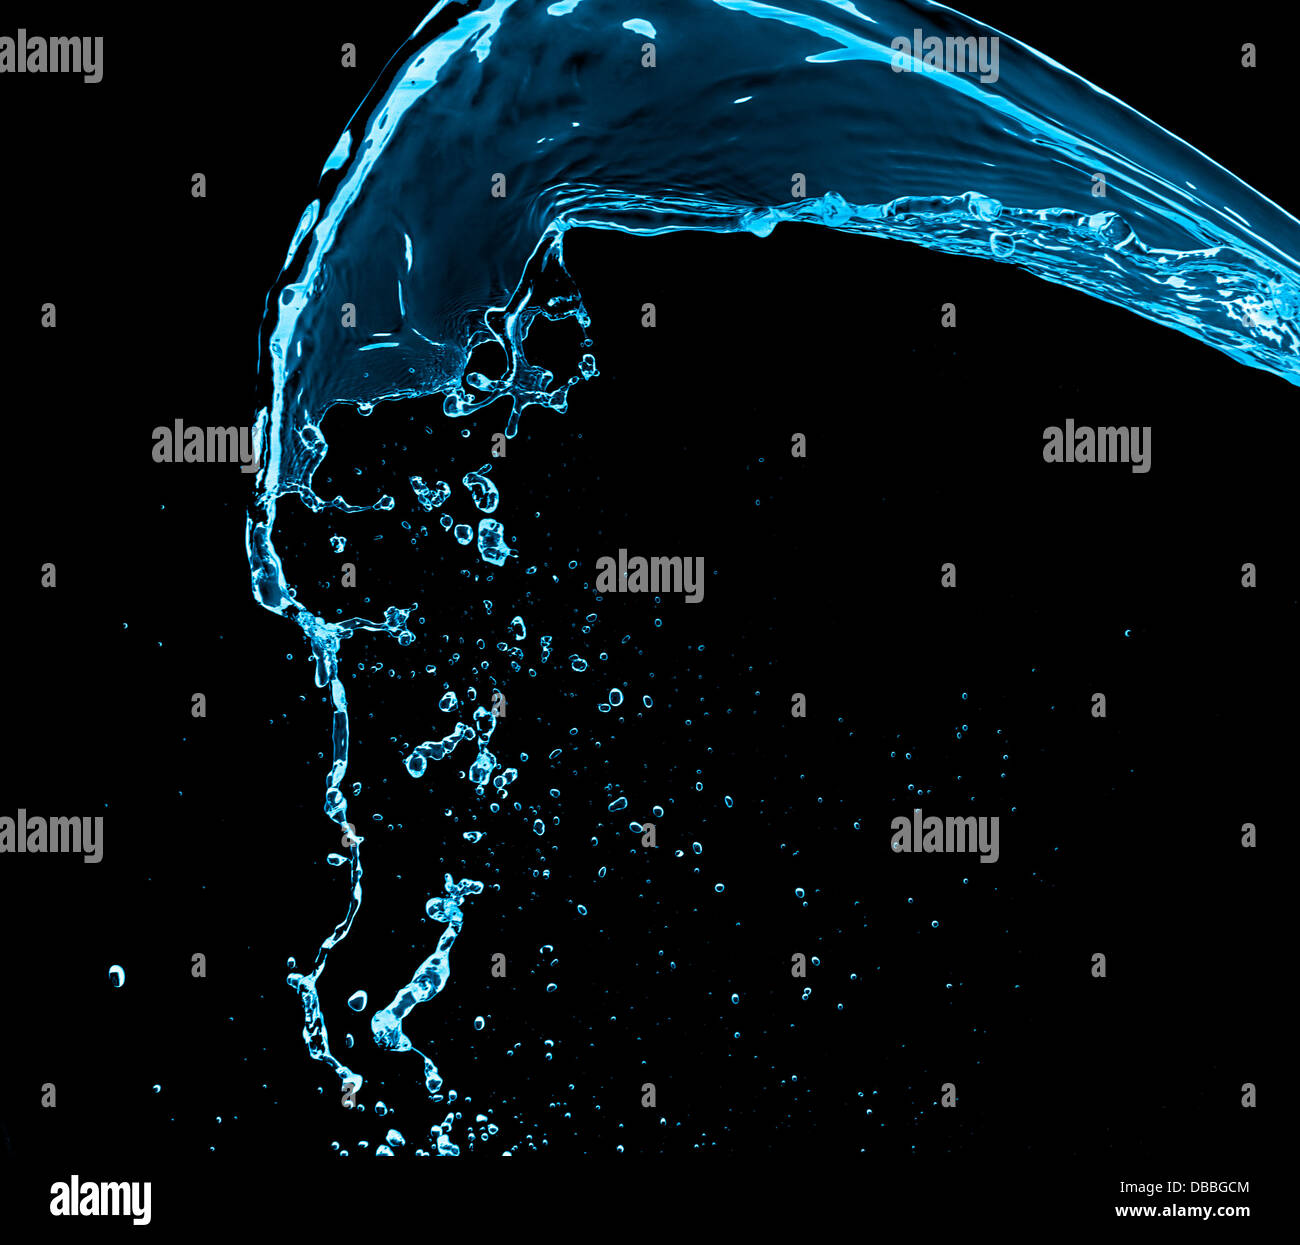 Blue water splash isolated on black background Stock Photo